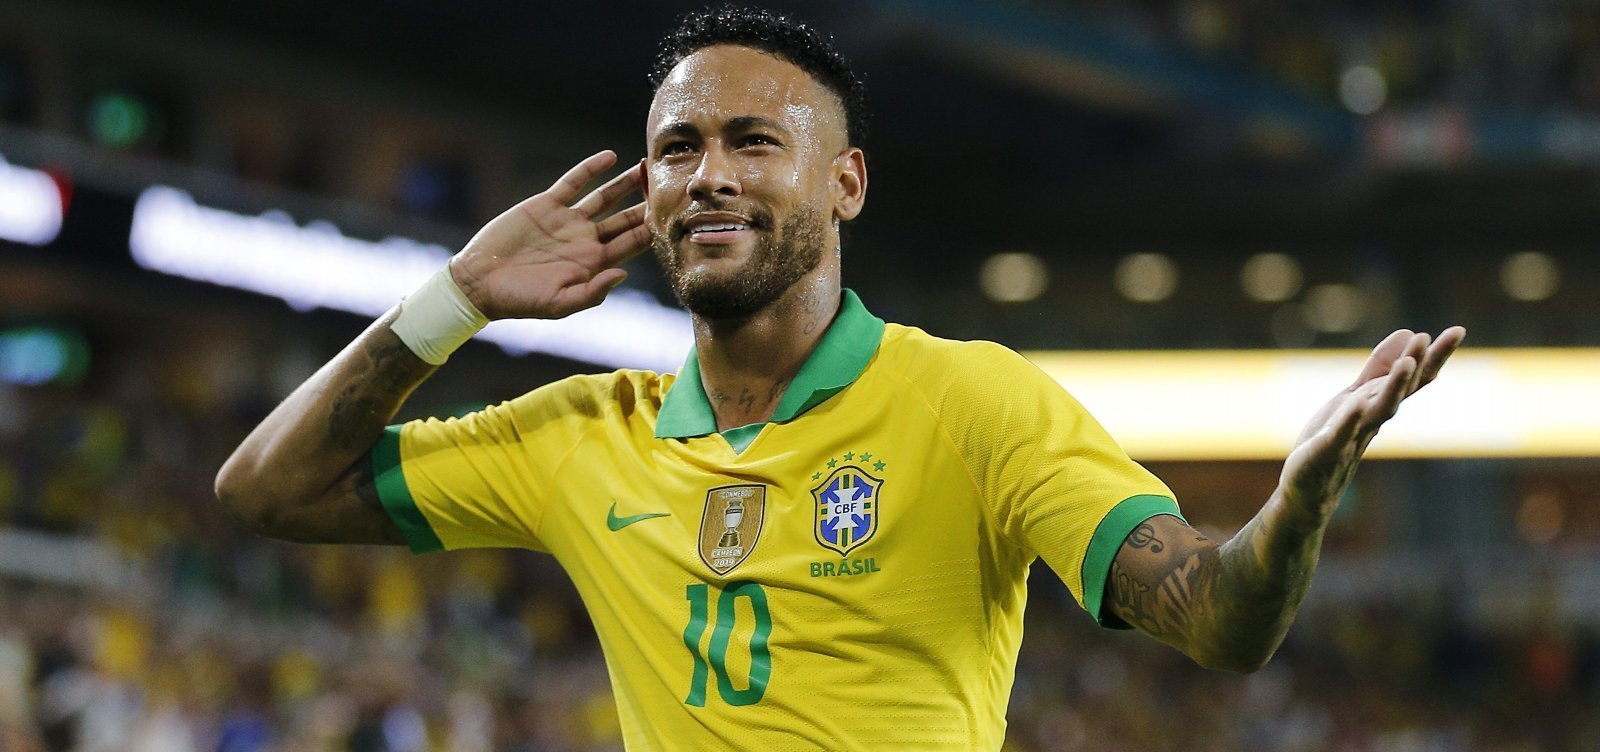 Neymar e Danilo podem jogar pelo Brasil contra Coreia? Fisioterapeuta  analisa imagens da CBF - Copa do Mundo - Diário do Nordeste